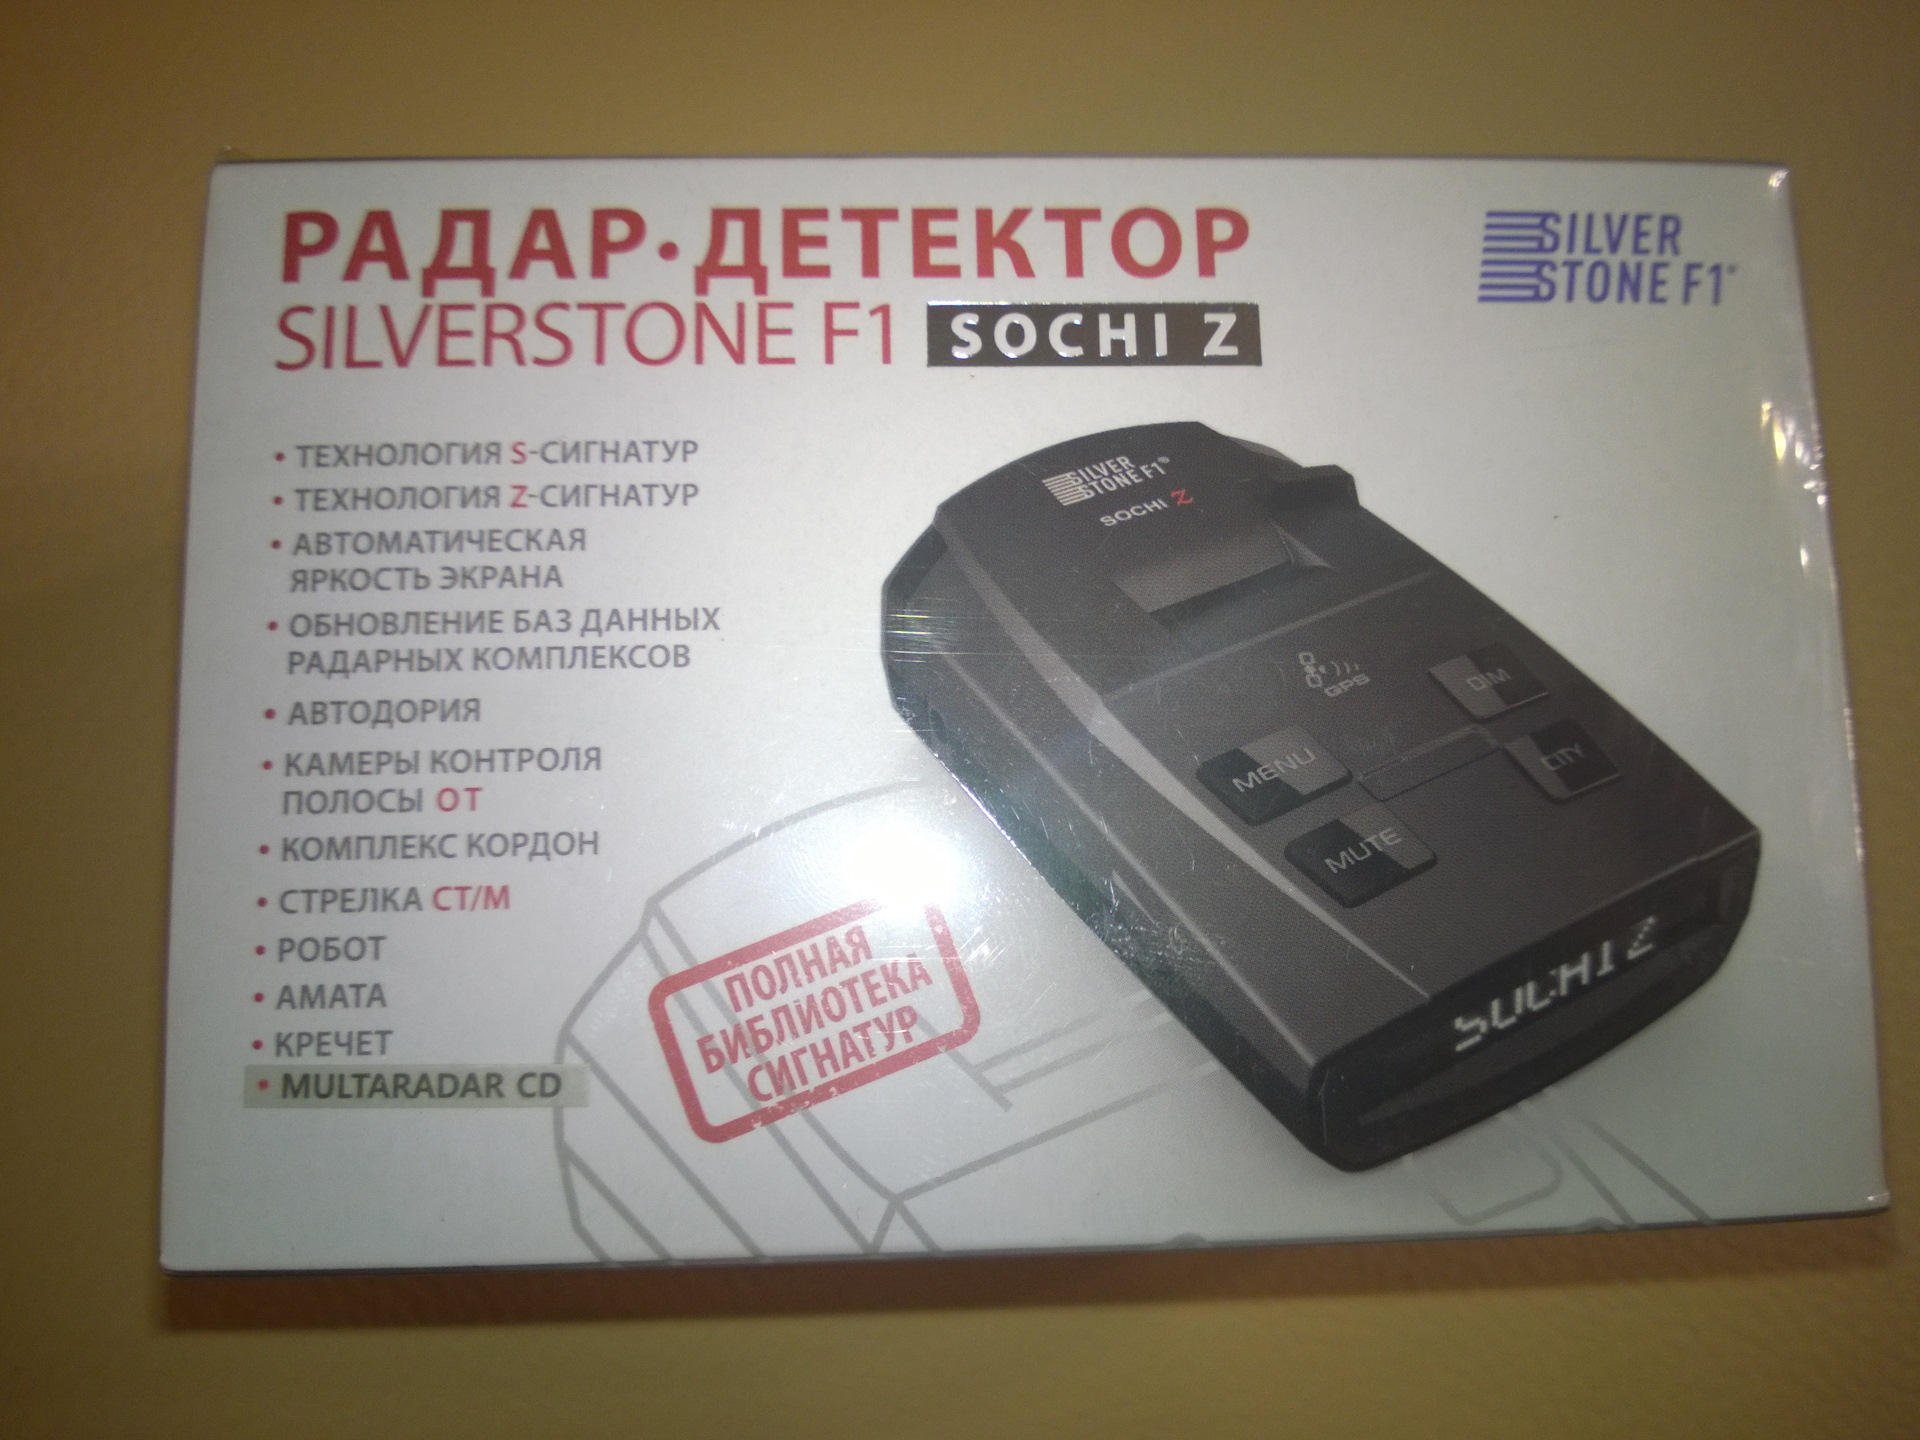 Антирадар в Москве купить бу недорого на авито в Москве. Обновление баз радар детектора